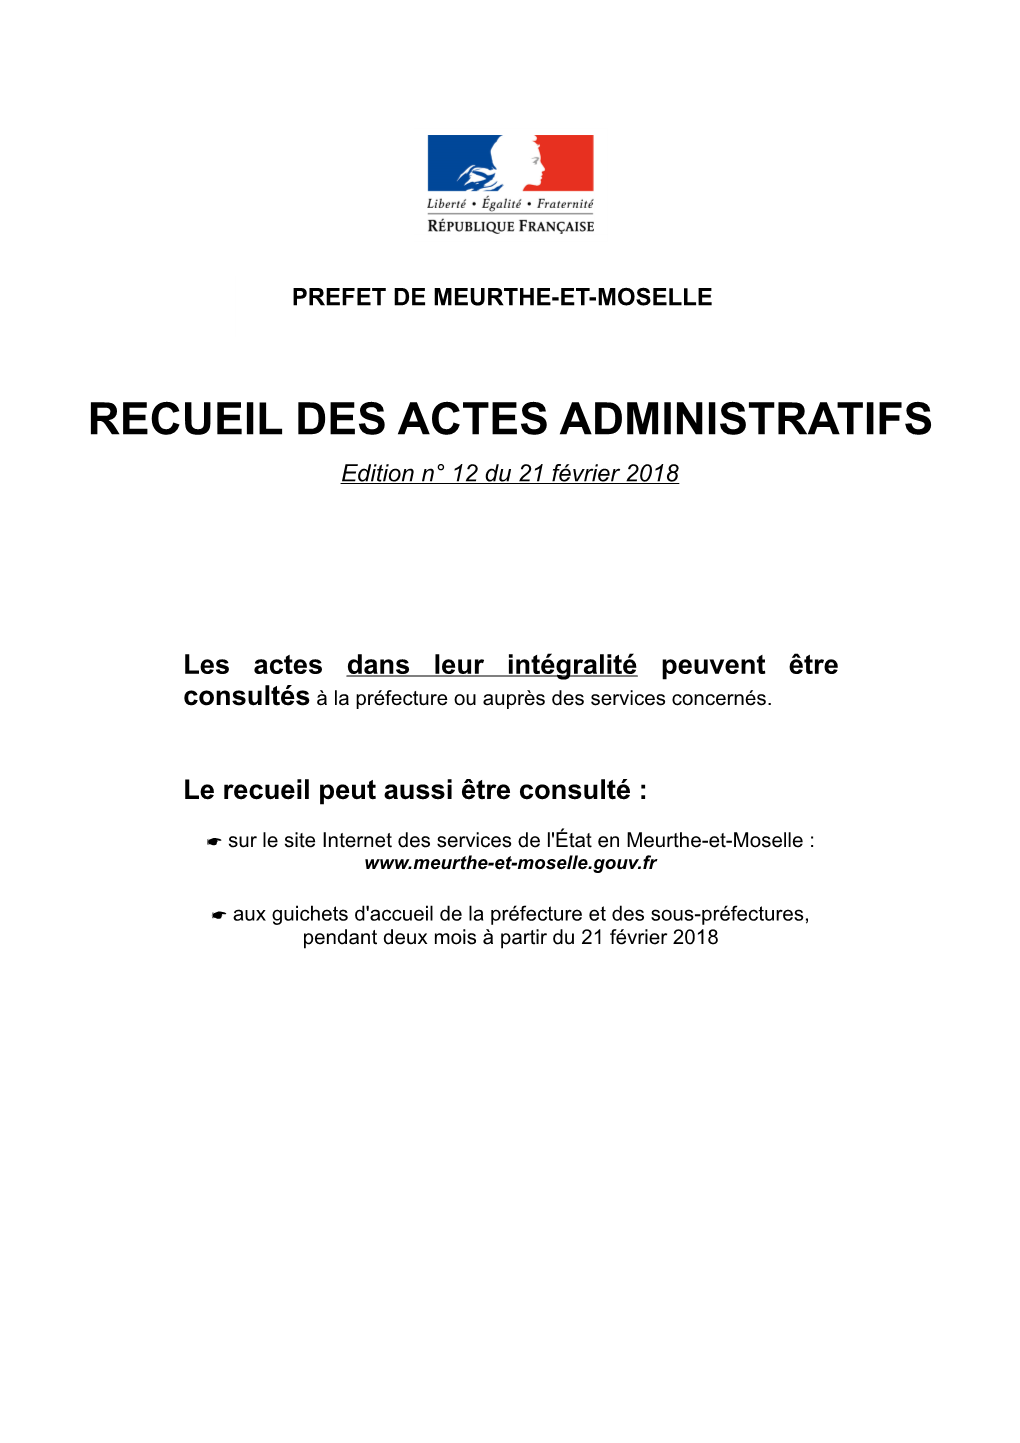 RECUEIL DES ACTES ADMINISTRATIFS Edition N° 12 Du 21 Février 2018